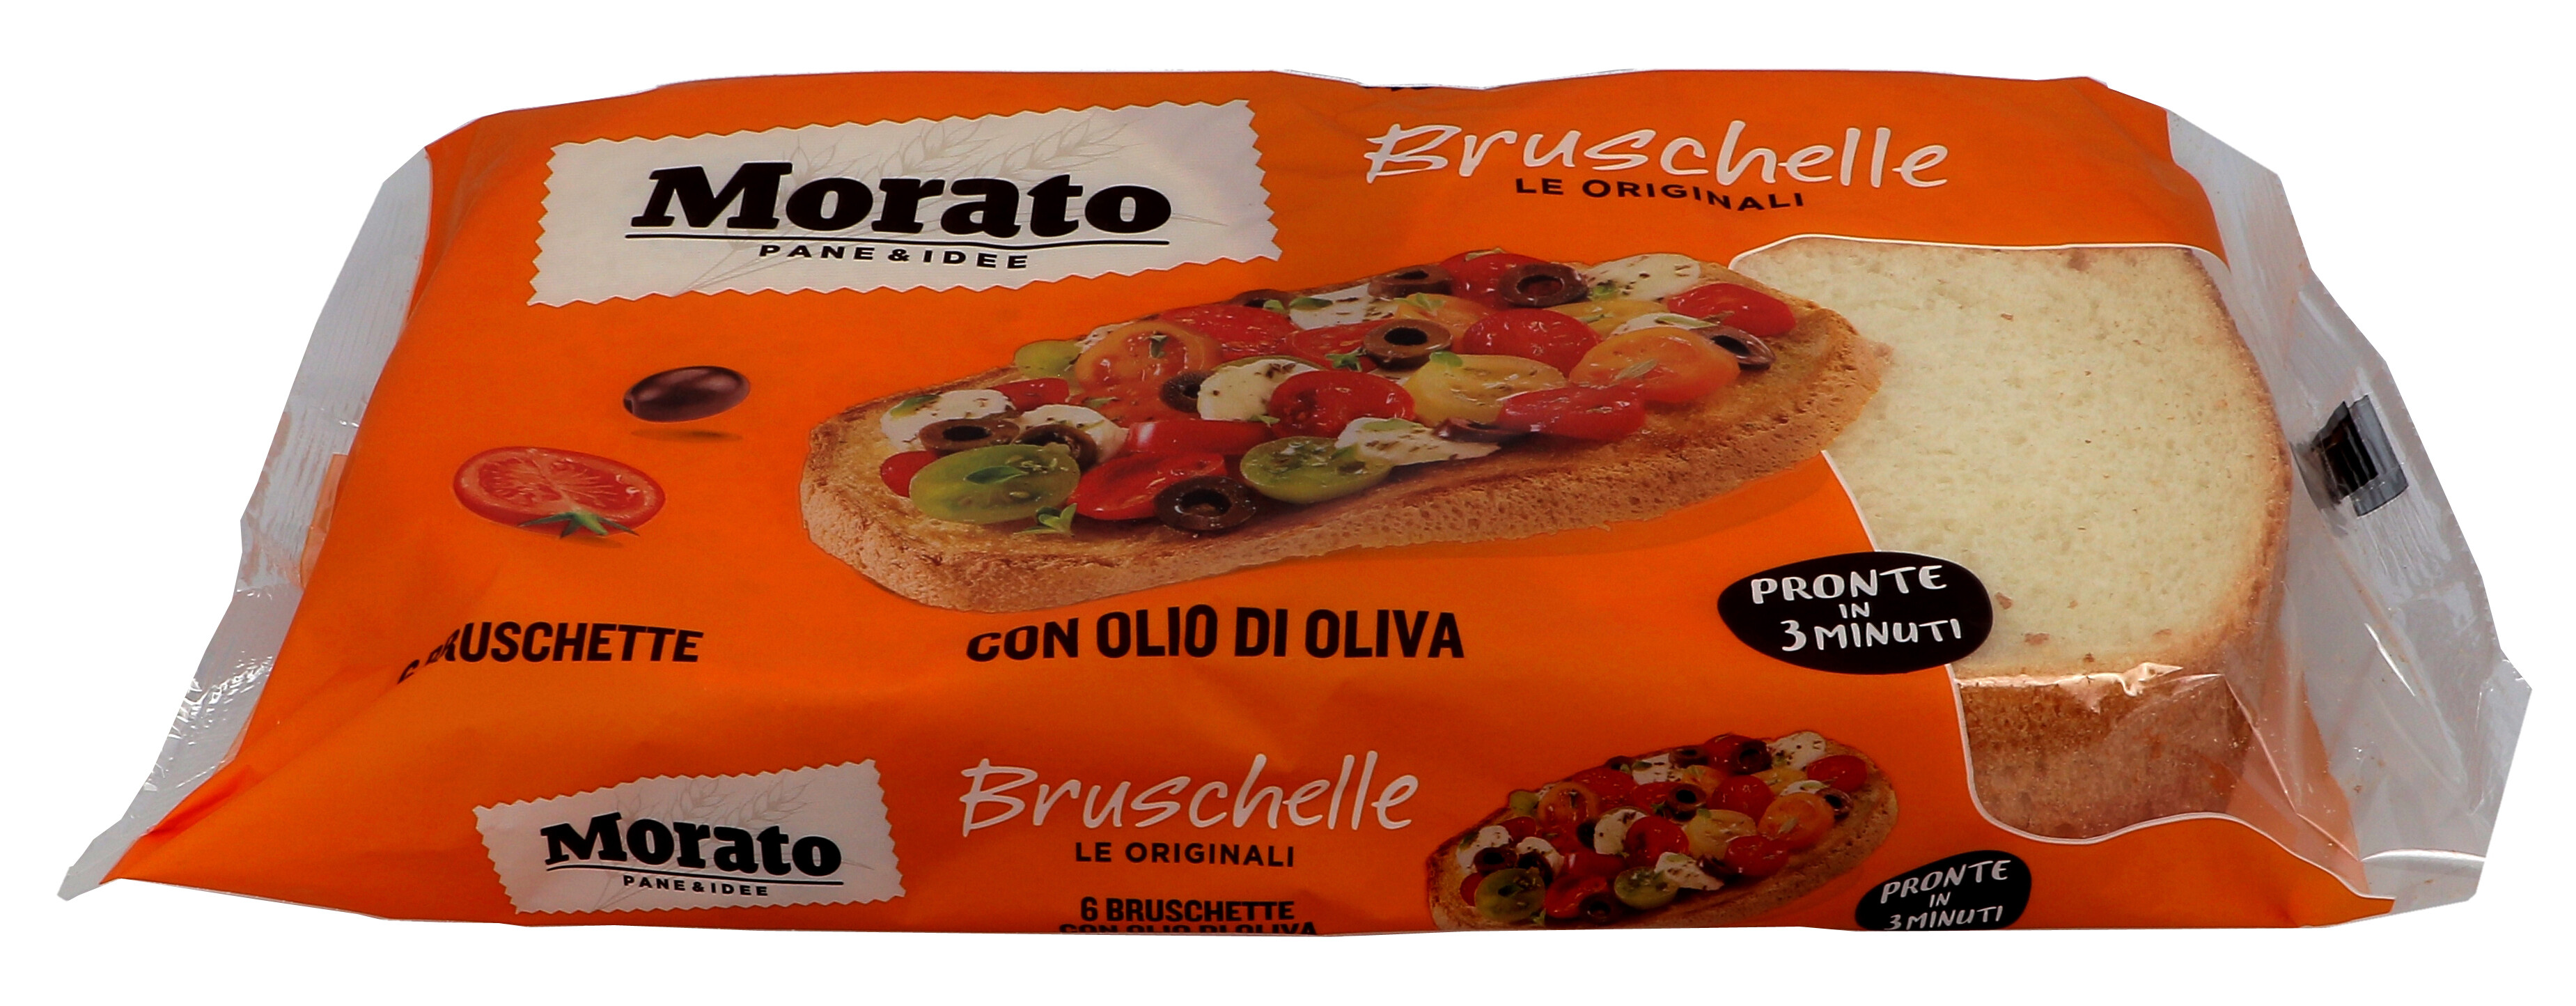 Morato Bruschelle Fantasy 8x400gr Bruschetta Bread with Olive Oil 